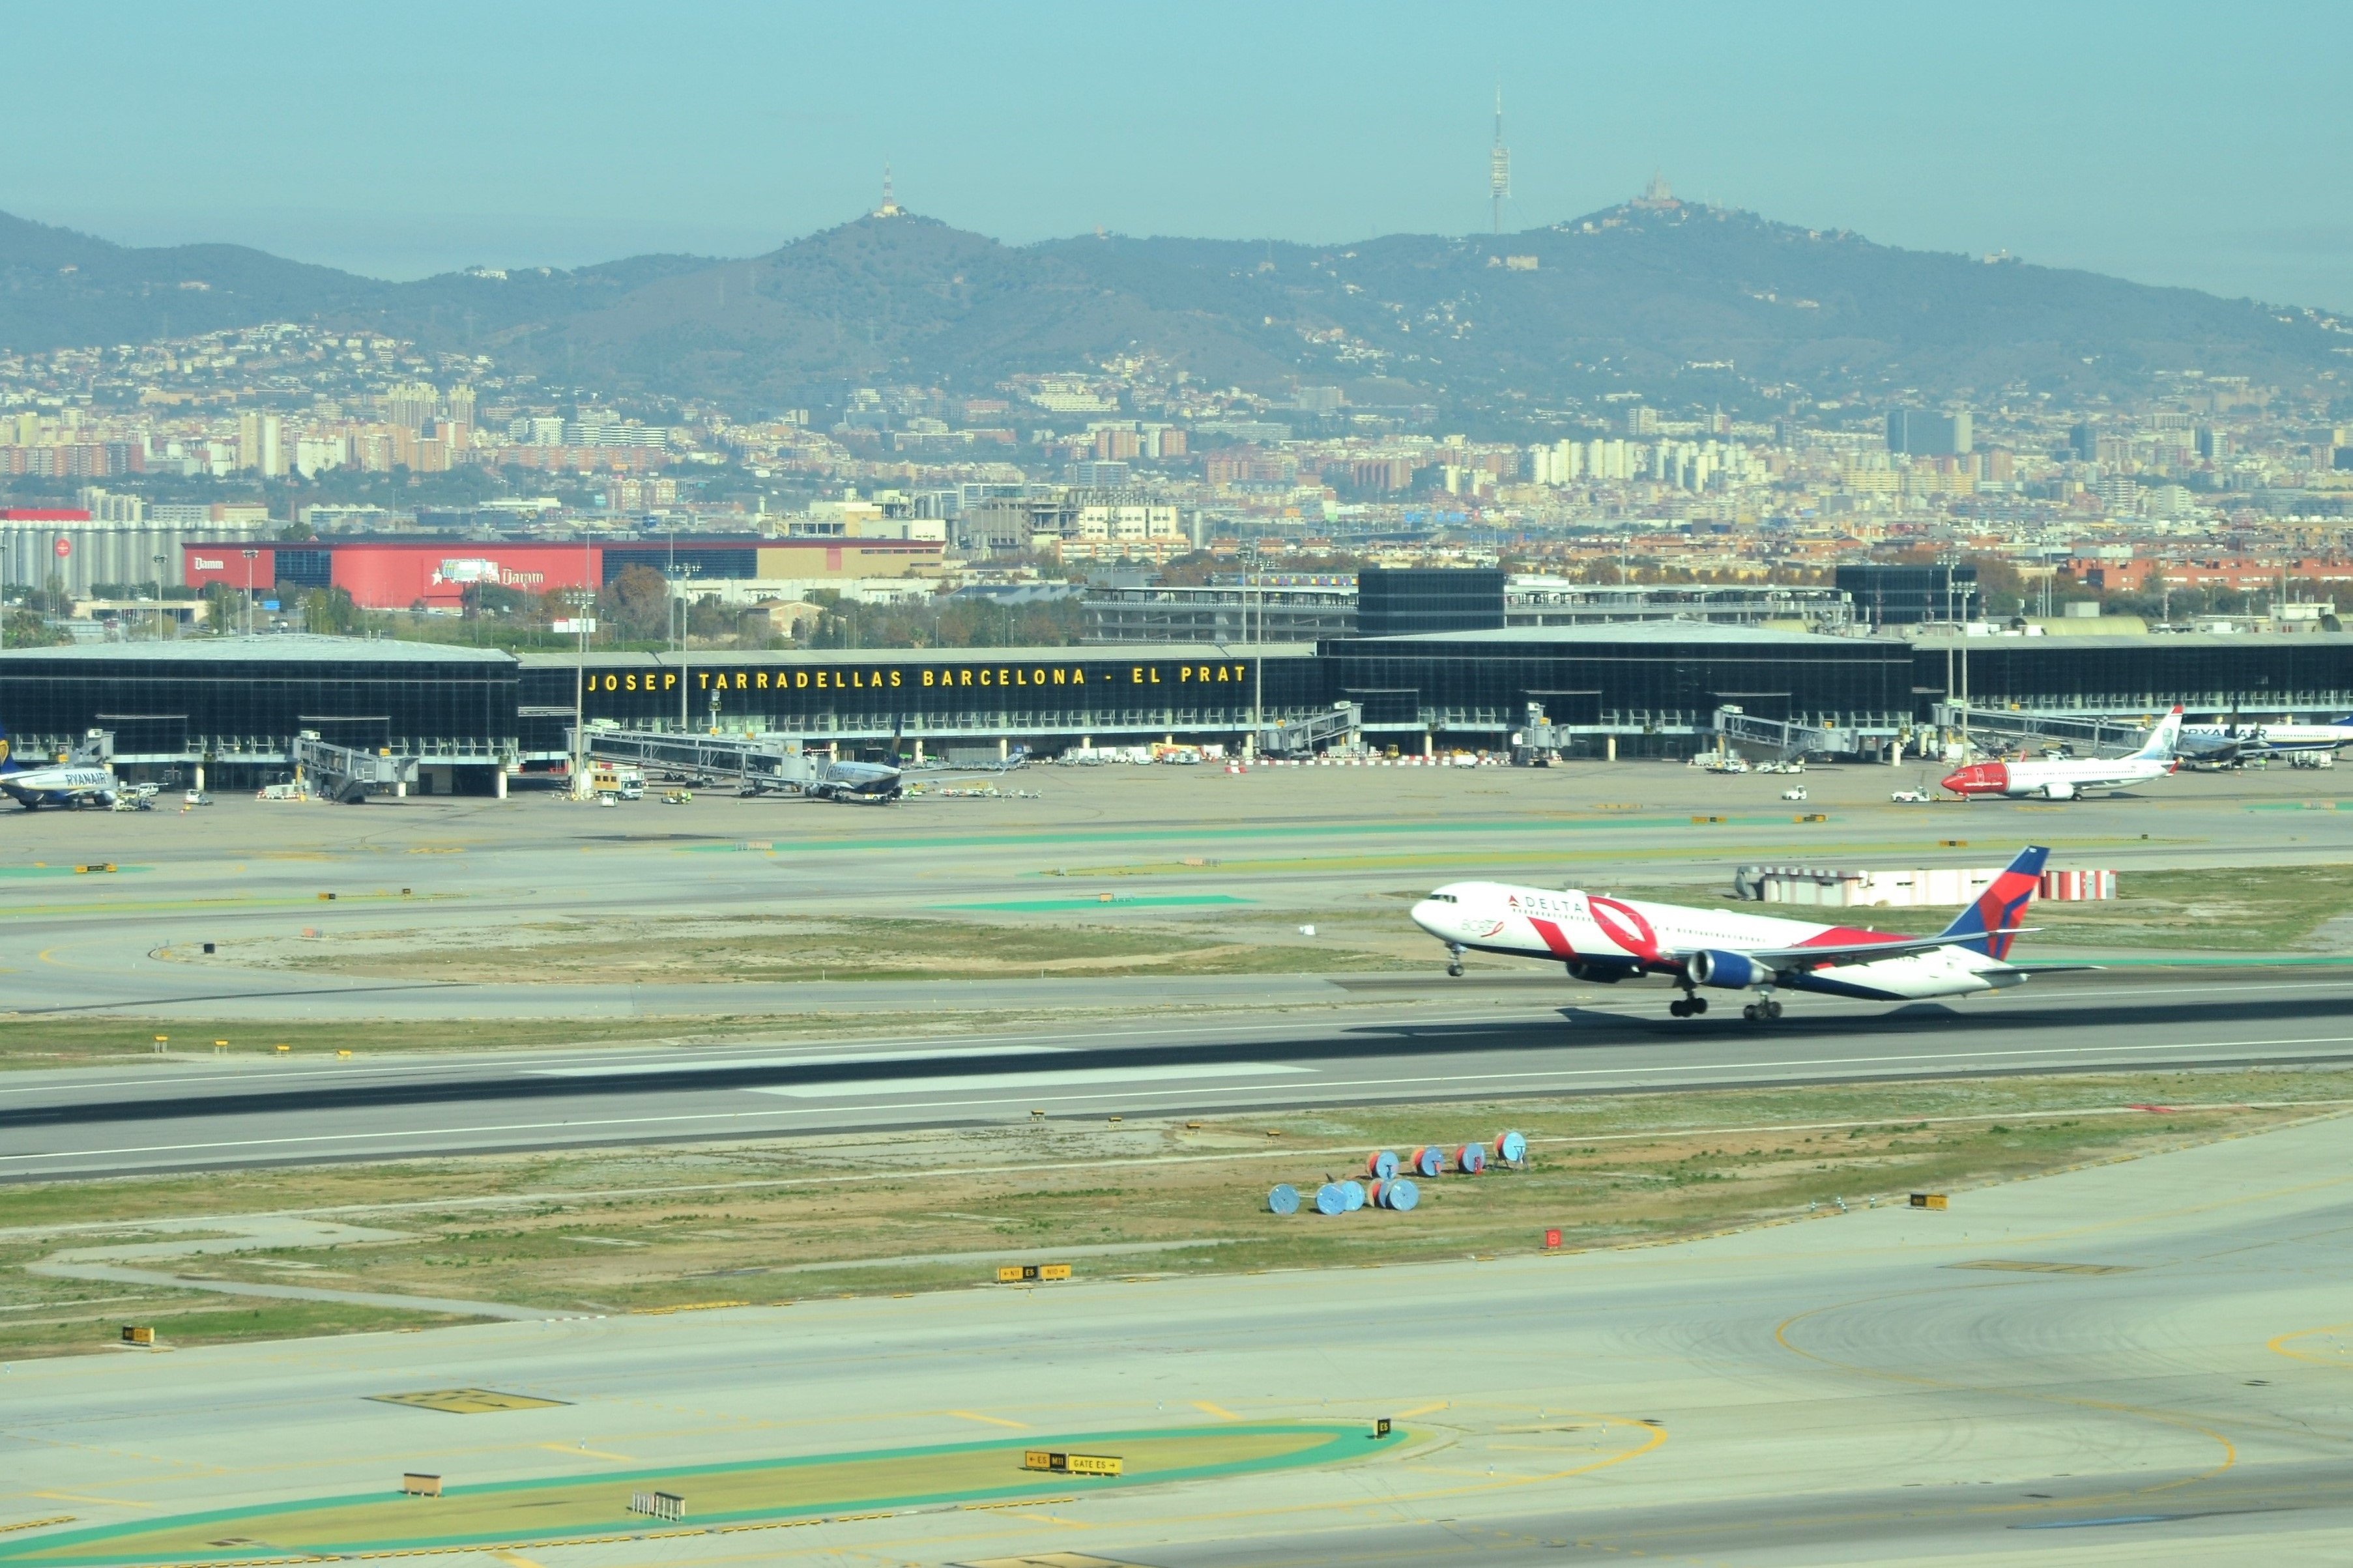 La ampliación del aeropuerto de Barcelona, vetada hasta 2027 y pendiente de Aragonès